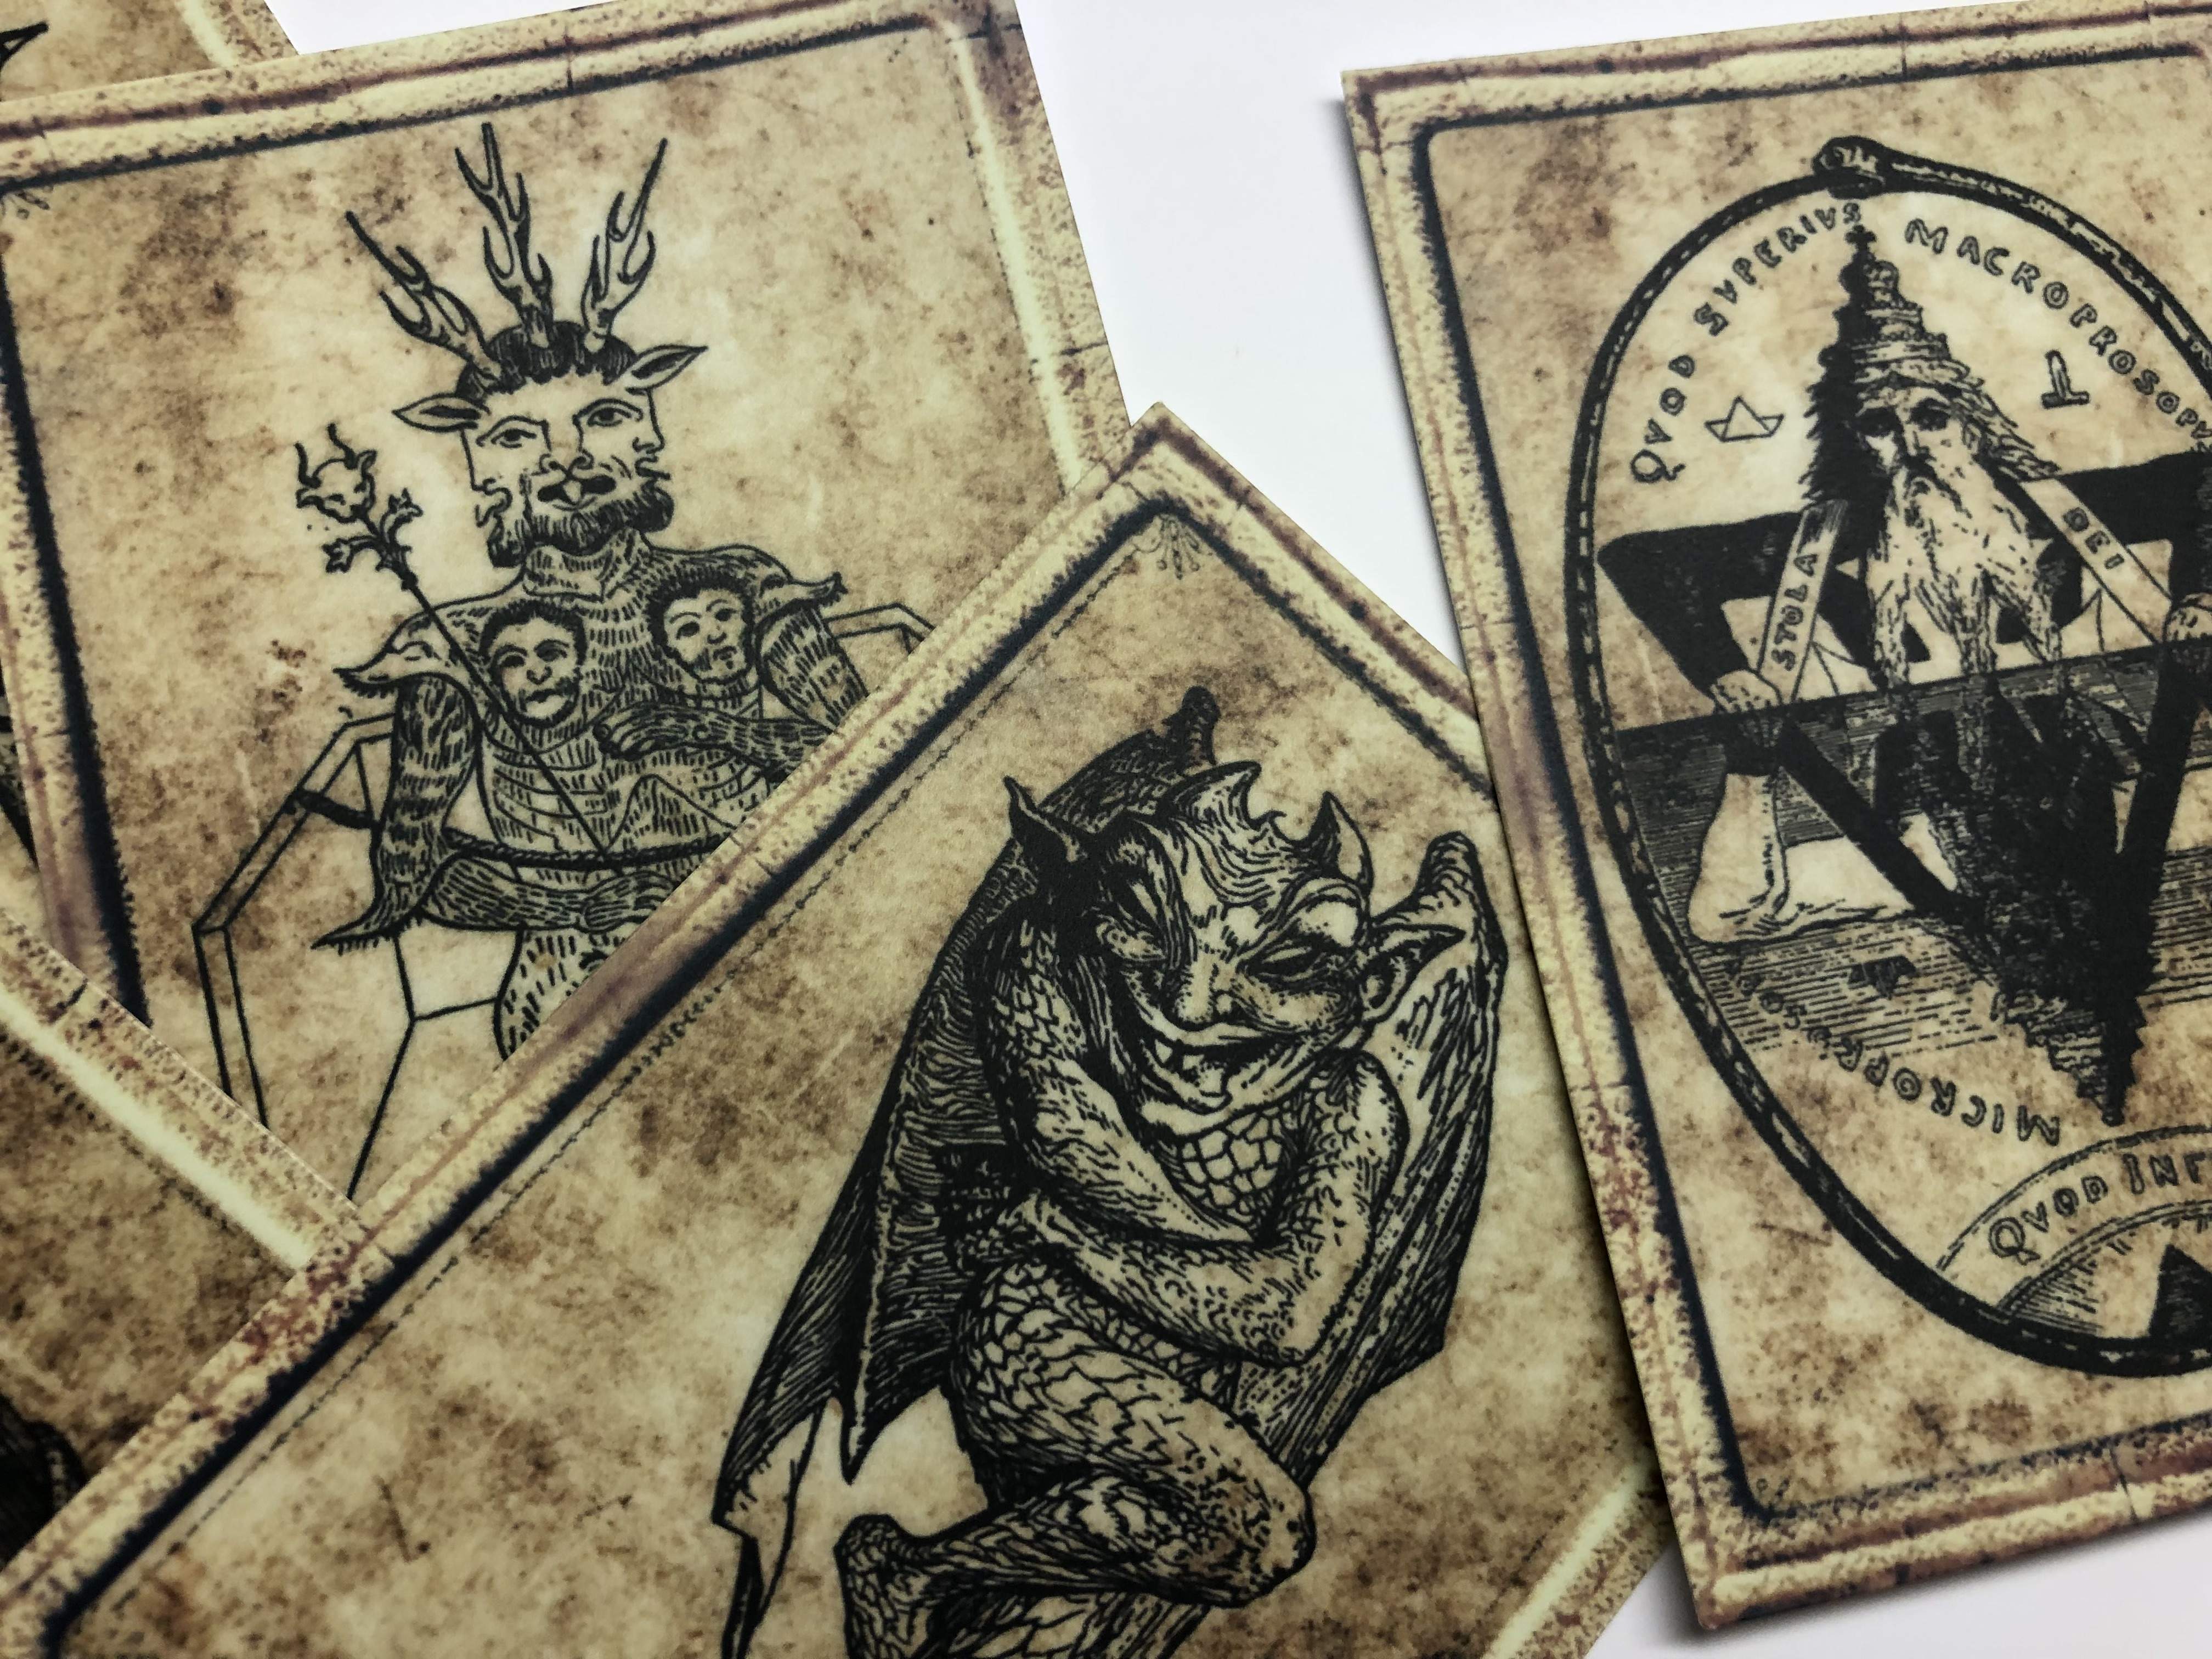 Occult Illustration Vinyl Sticker Packs